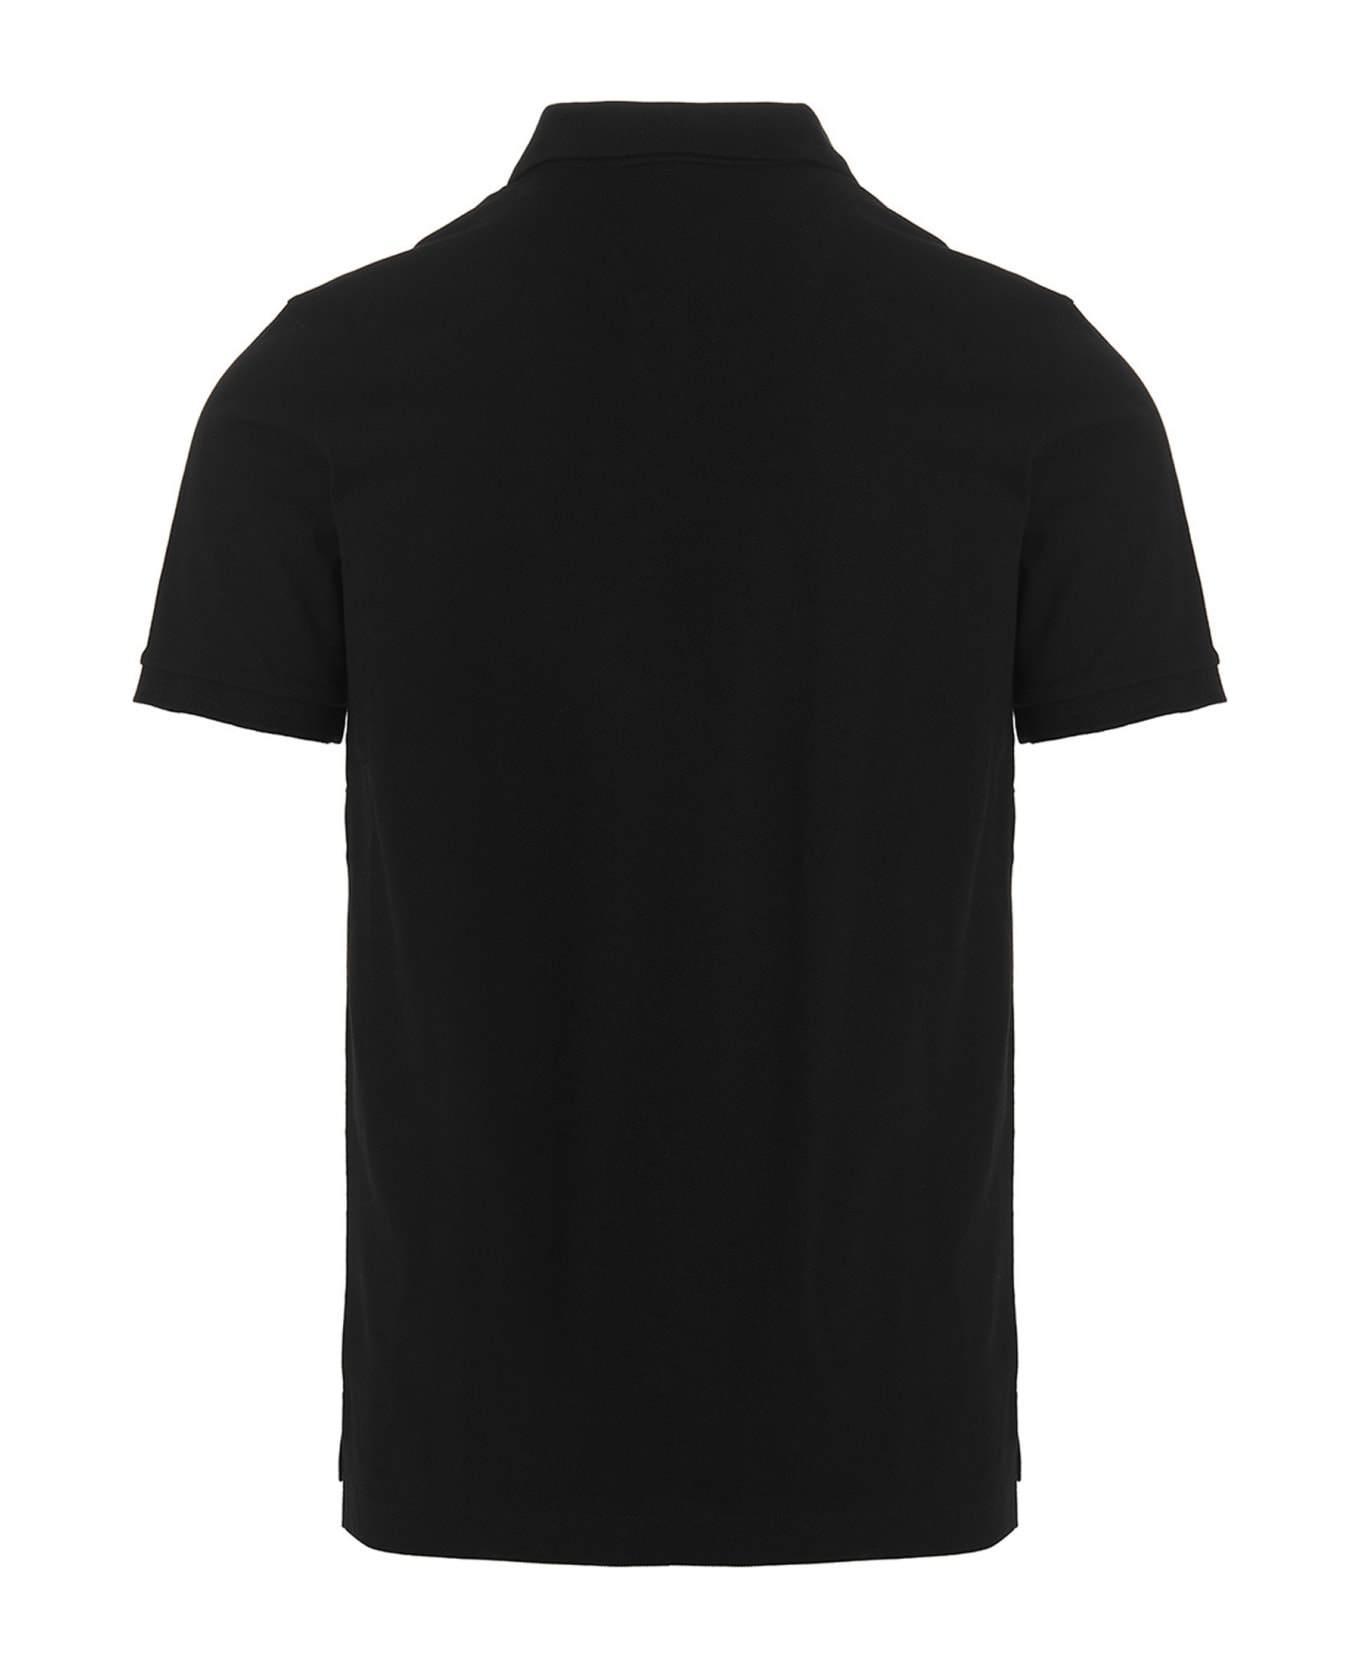 Philipp Plein Logo Polo Shirt - Black  